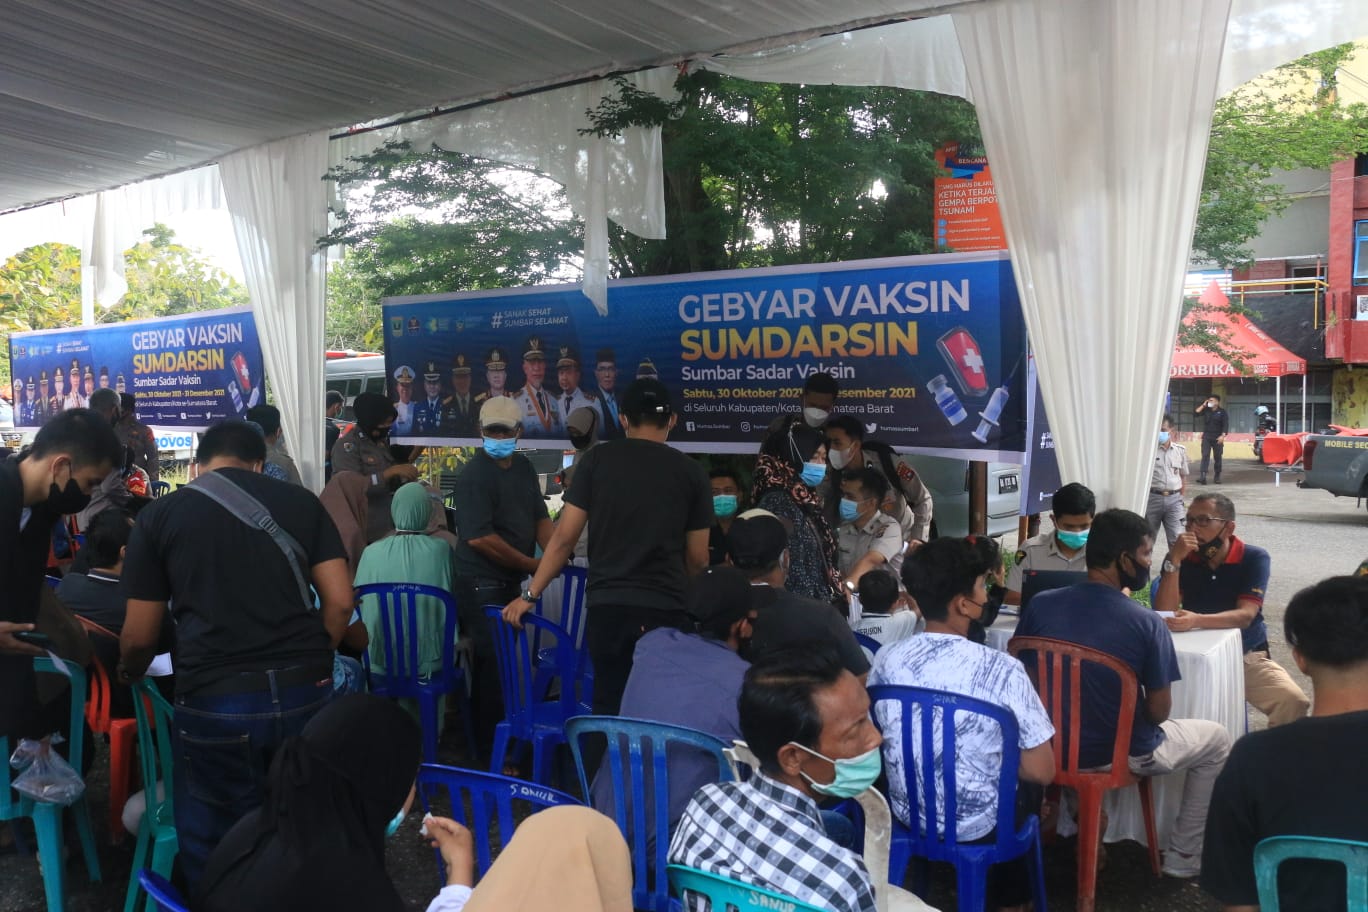 SUMDARSIN, Gelorakan Masyarakat untuk Vaksin   TNS - Pemerintah, TNI, Polri dan stakeholder lainnya berkolaborasi untuk mensukseskan vaksinasi Covid-19. Hal ini bertujuan untuk meningkatkan herd immunity masyarakat guna memutus mata rantai penularan Covid-19.   Di Provinsi Sumatera Barat, pergelaran vaksinasi mengusung Sumbar Sadar Vaksin (SUMDARSIN) yang awalnya dimulai pada Sabtu tanggal 30 Oktober 2021.  Untuk itu, Polda Sumbar bersama jajarannya juga gencar mengajak dan memberikan sosialisasi kepada masyarakat untuk mengikuti SUMDARSIN.  "Kita menggelorakan agar masyarakat mengikuti SUMDARSIN, karena vaksinasi sangat bermanfaat," kata Kabid Humas Polda Sumbar Kombes Pol Satake Bayu Setianto, S.Ik.   Tema SUMDARSIN yang diusung ini, untuk meningkatkan vaksinasi masyarakat di Sumbar, dimana sebelumnya masyarakat yang belum tersadar dari manfaat vaksin Covid-19 itu sendiri sehingga dengan menggelar Sumdarsin masyarakat menambah keinginannya untuk di vaksin.   "Sekarang kita lihat sudah banyak yang vaksin, dan kedepannya harapan kita bersama adalah makin bertambah banyak yang divaksin," ujarnya.   Apalagi, saat pergelaran Sumdarsin tersebut juga terdapat doorprize seperti sepeda motor, sepeda dan hadiah hiburan menarik lainnya.   "Selain kegiatan vaksin, pada Sumdarsin yang berada di stadion GOR H Agus Salim Padang juga ada pemberian doorprize, pembagian sembako, ada jualan UMKM," ujarnya.   Selain itu, dari Satbrimob Polda Sumbar juga menyediakan dapur umum untuk makan gratis. "Kita siapkan juga tempat ibadah sholat," pungkasnya.(*)